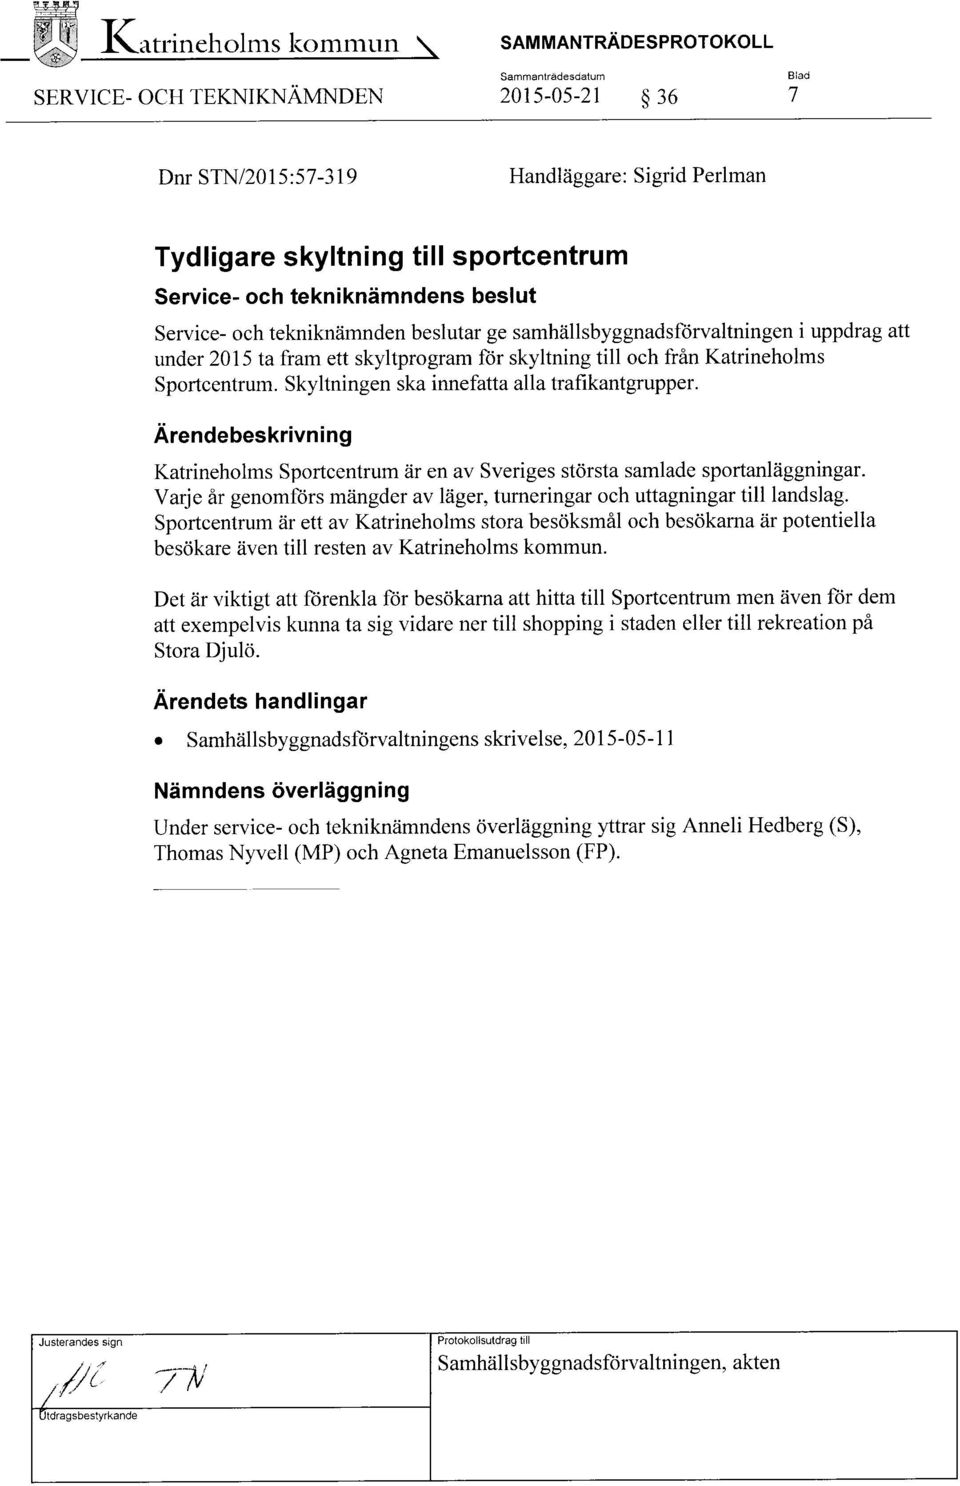 tekniknämndens beslut Service- och tekniknämnden beslutar ge samhällsbyggnadsförvaltningen Tuppdrag att under 2015 ta fram ett skyltprogram för skyltning till och från Katrineholms Sportcentrum.